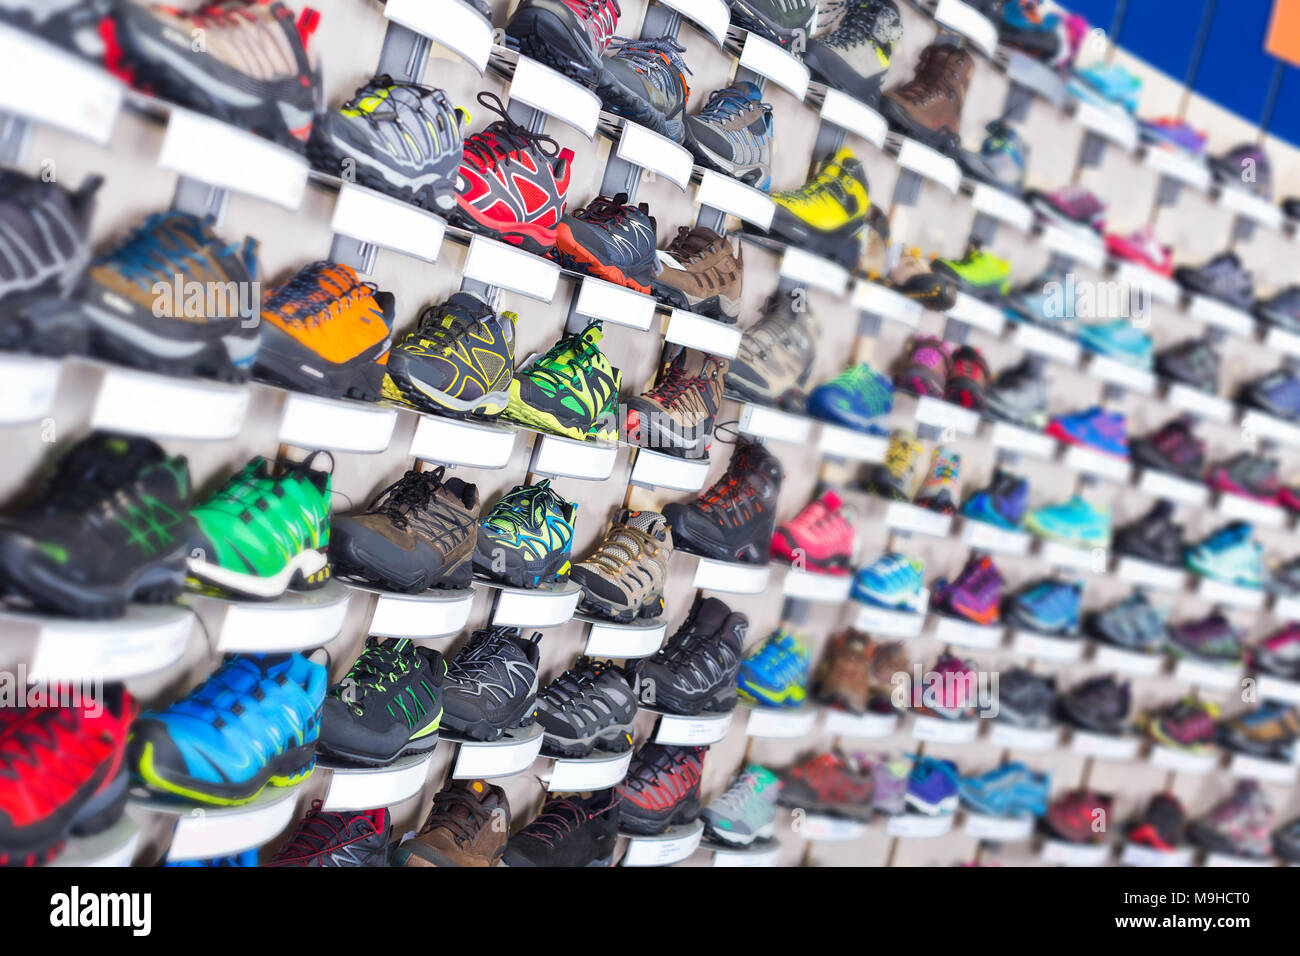 Immagine di grande selezione di scarpe sportive in negozio Foto stock -  Alamy